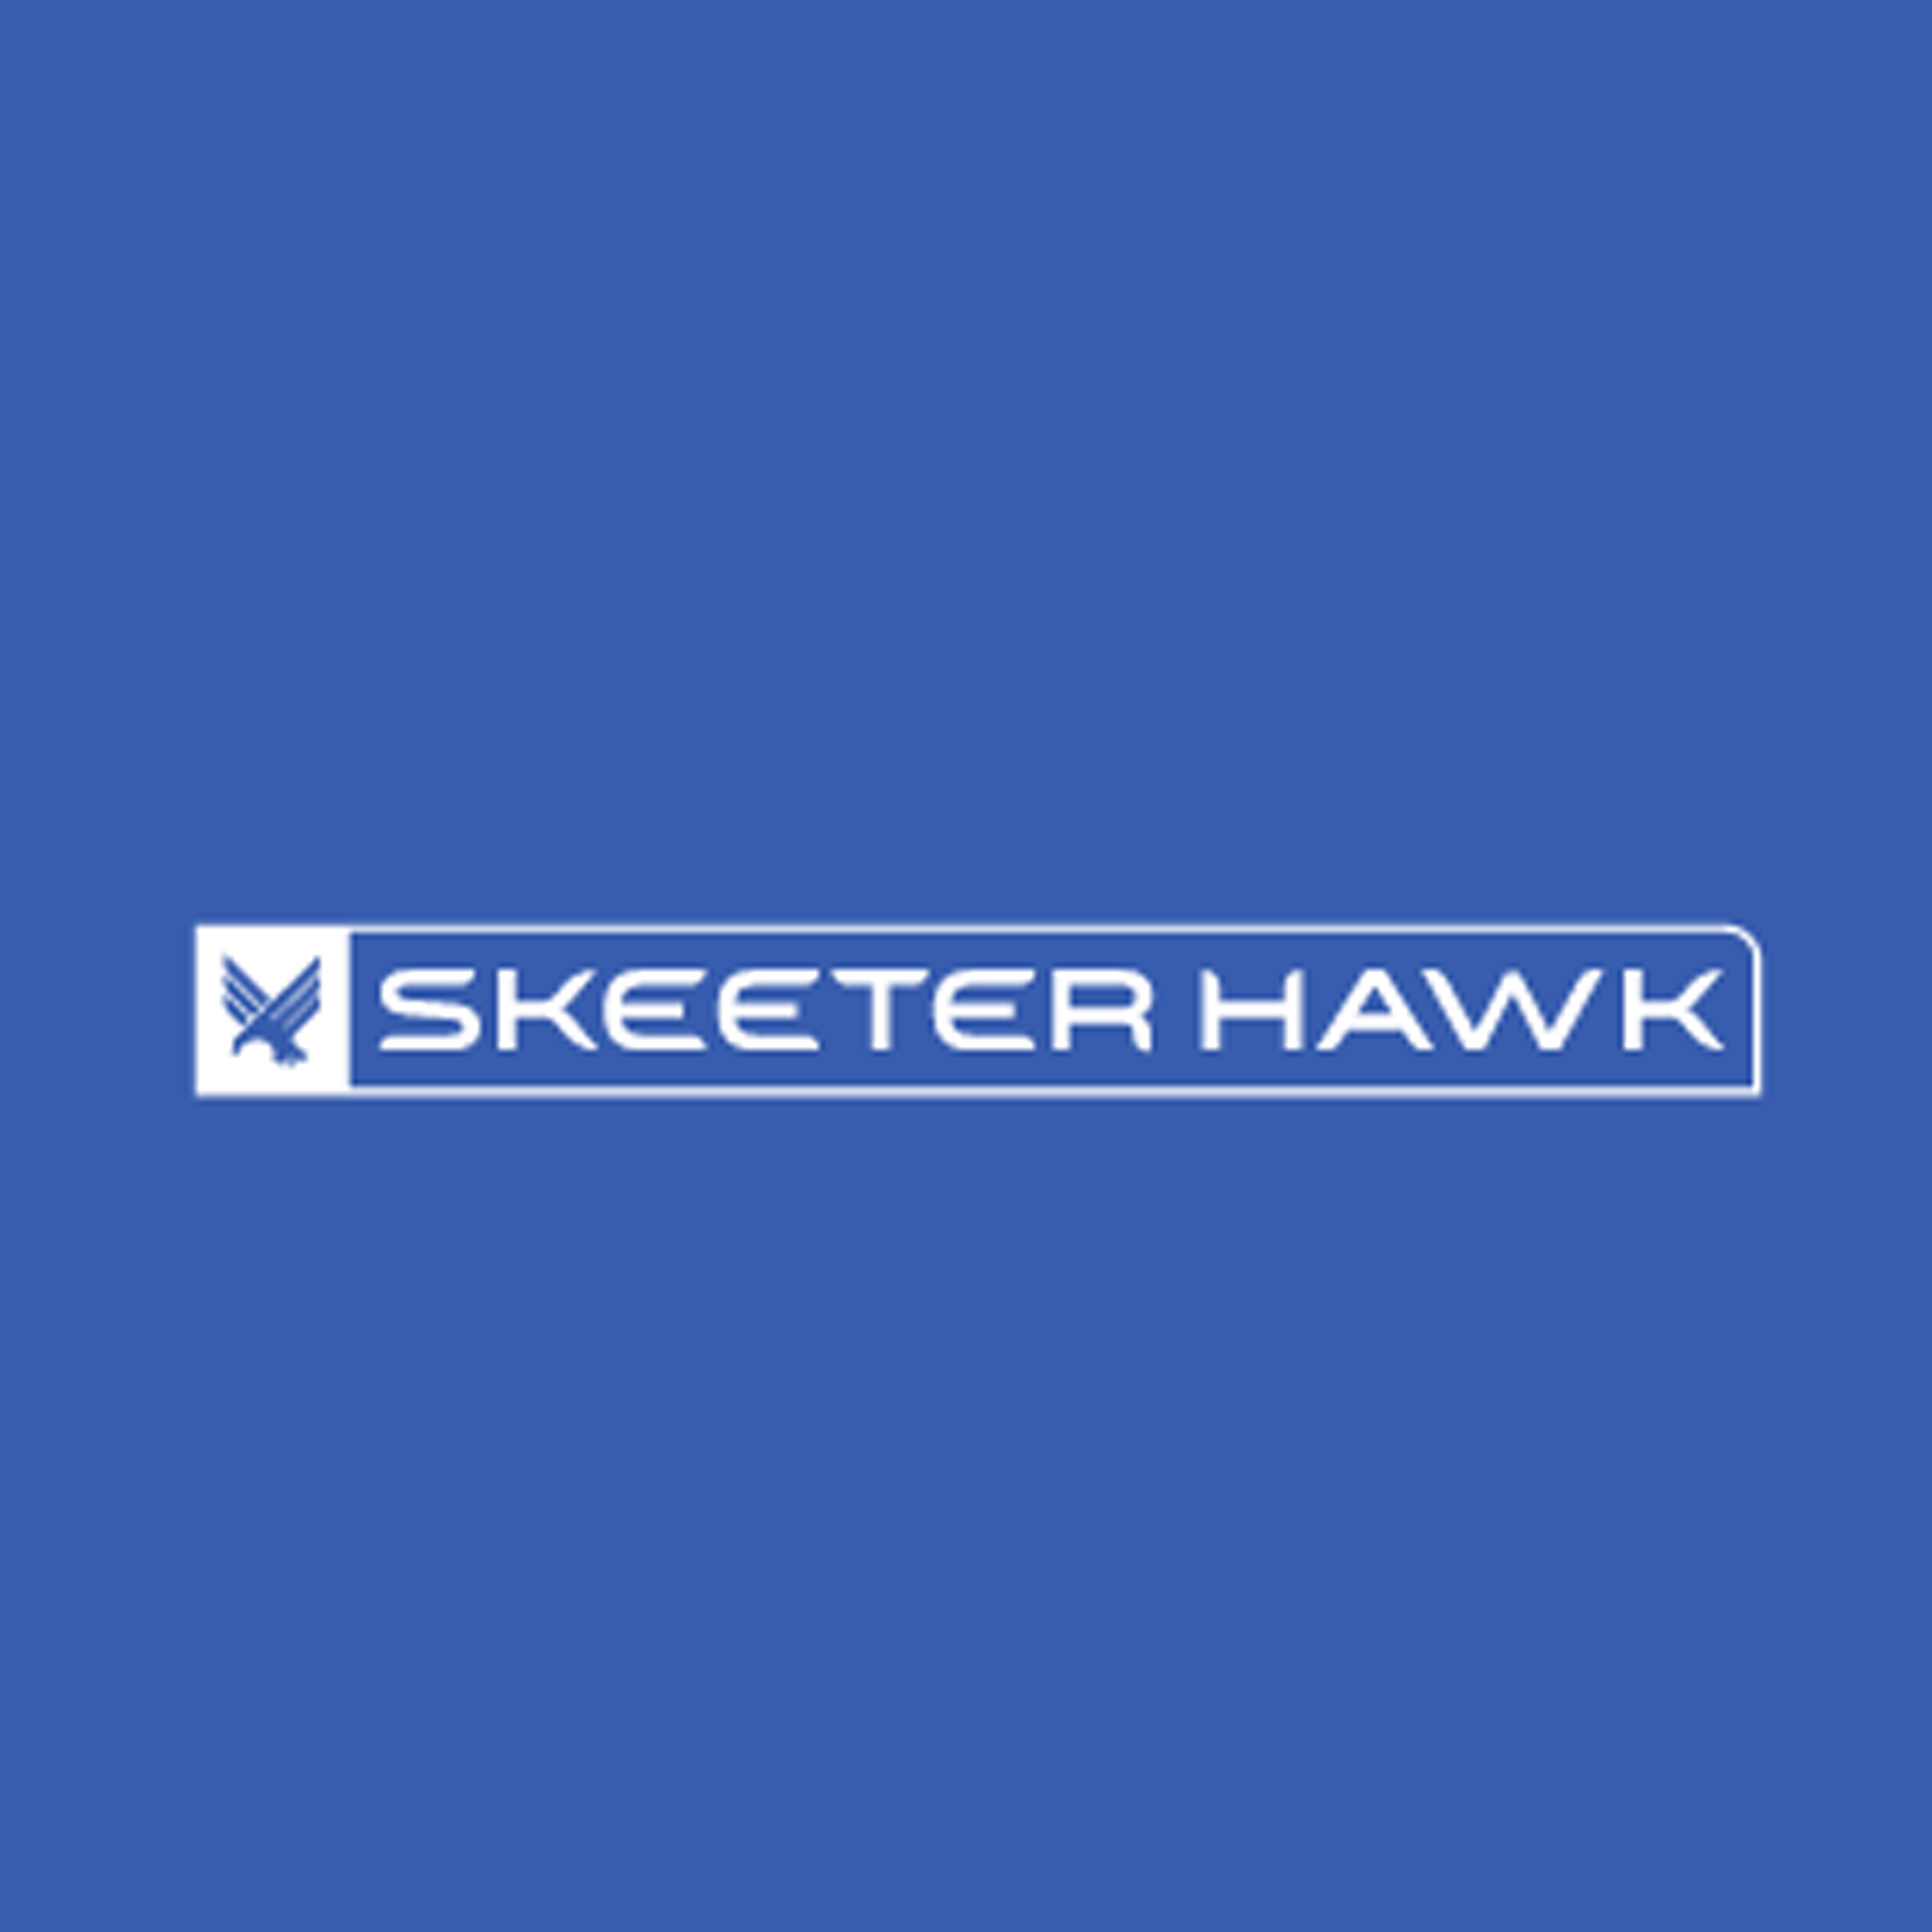 Skeeter Hawk logo